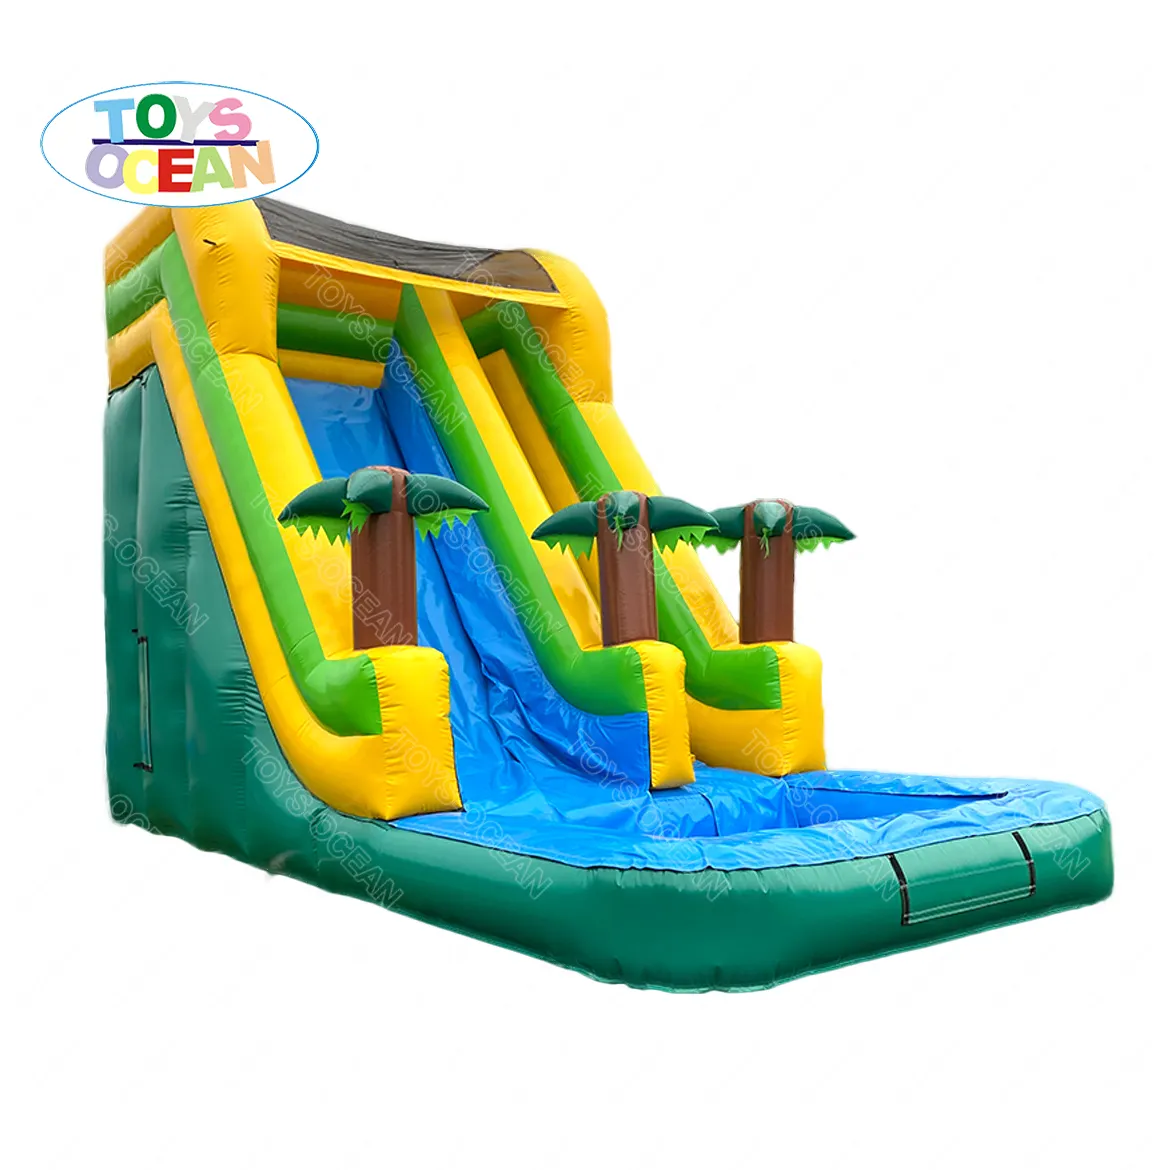 Pvc industriale gonfiabile del grado commerciale cortile custom jumper bouncy castle vai casa di rimbalzo gonfiabile scivolo con piscina